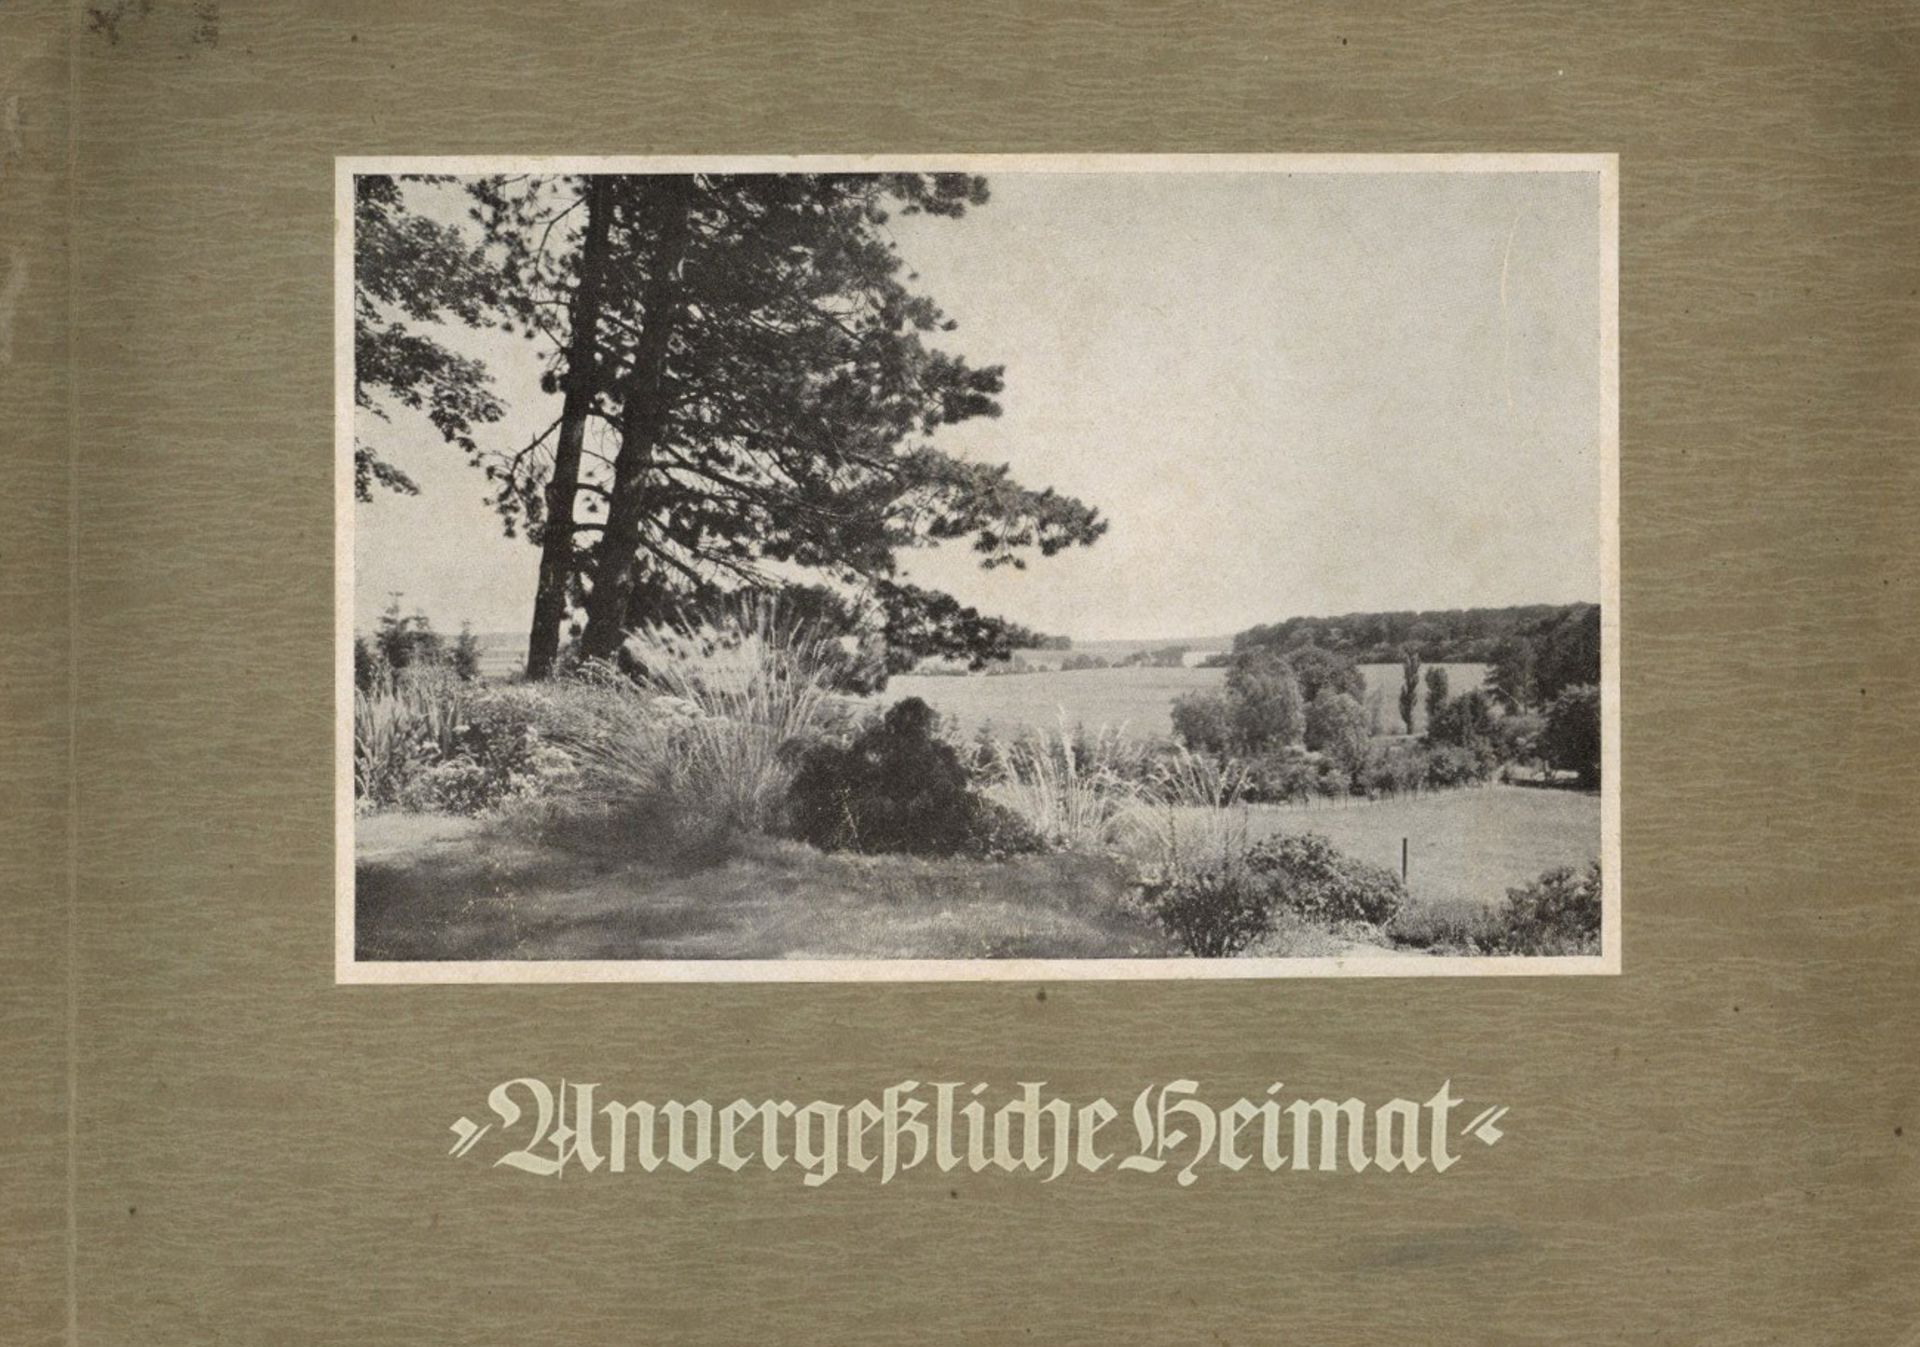 Sammelbild-Album Unvergessliche Heimat Hrsg. Greiling -Bilderstelle Lensahn-Ostholstein 186 Bilder